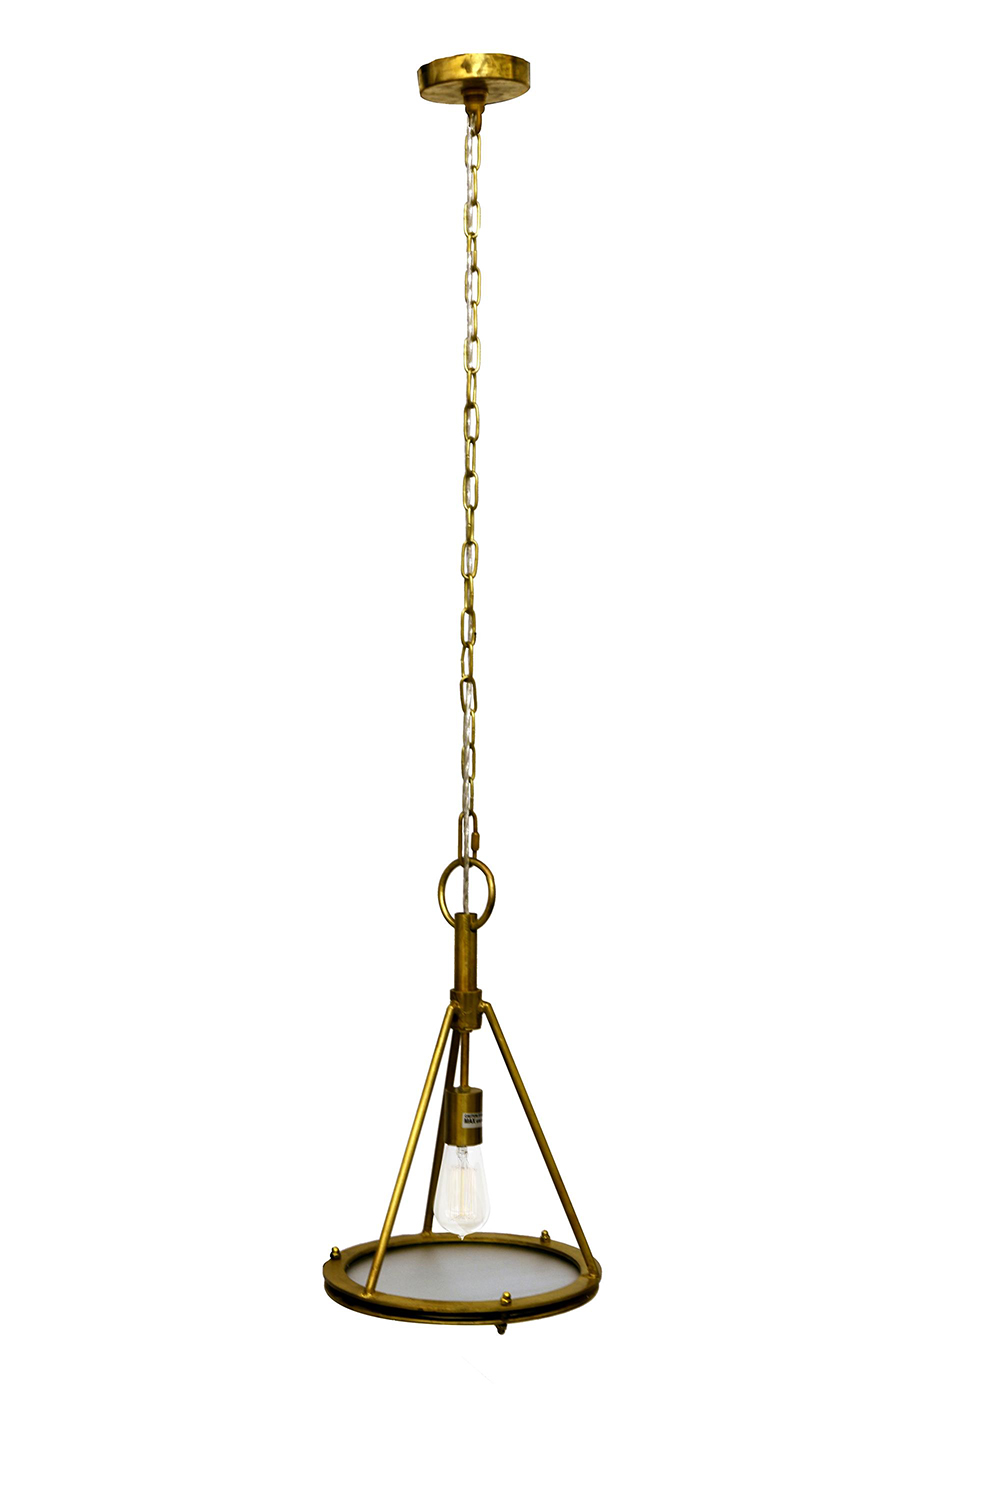 Ren-Wil Coney Ceiling Fixture - Brass antique